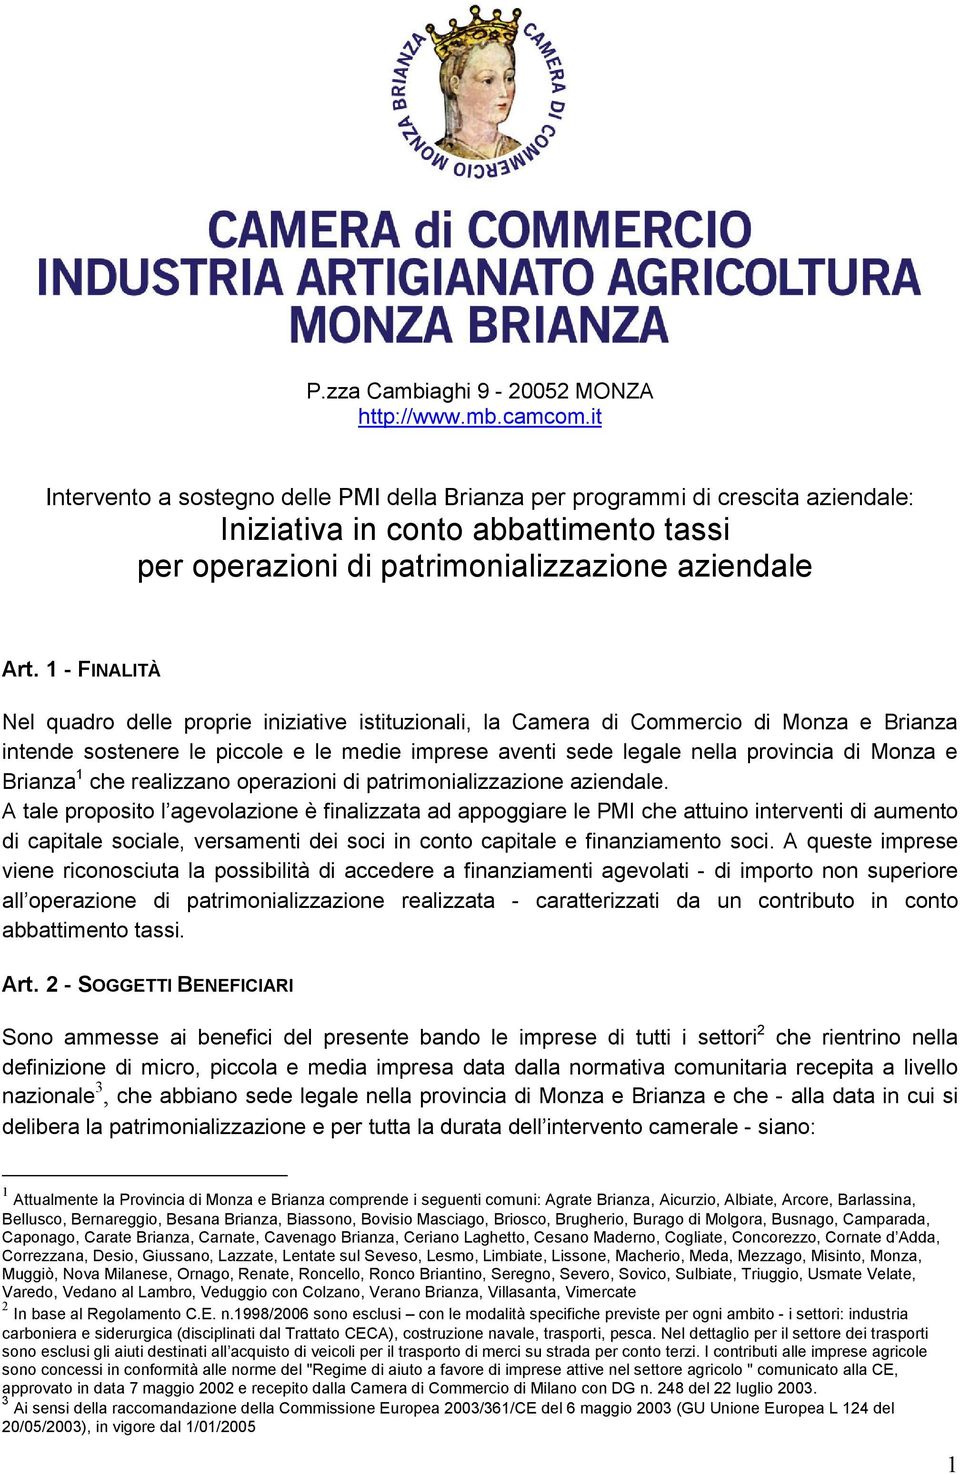 1 - FINALITÀ Nel quadro delle proprie iniziative istituzionali, la Camera di Commercio di Monza e Brianza intende sostenere le piccole e le medie imprese aventi sede legale nella provincia di Monza e